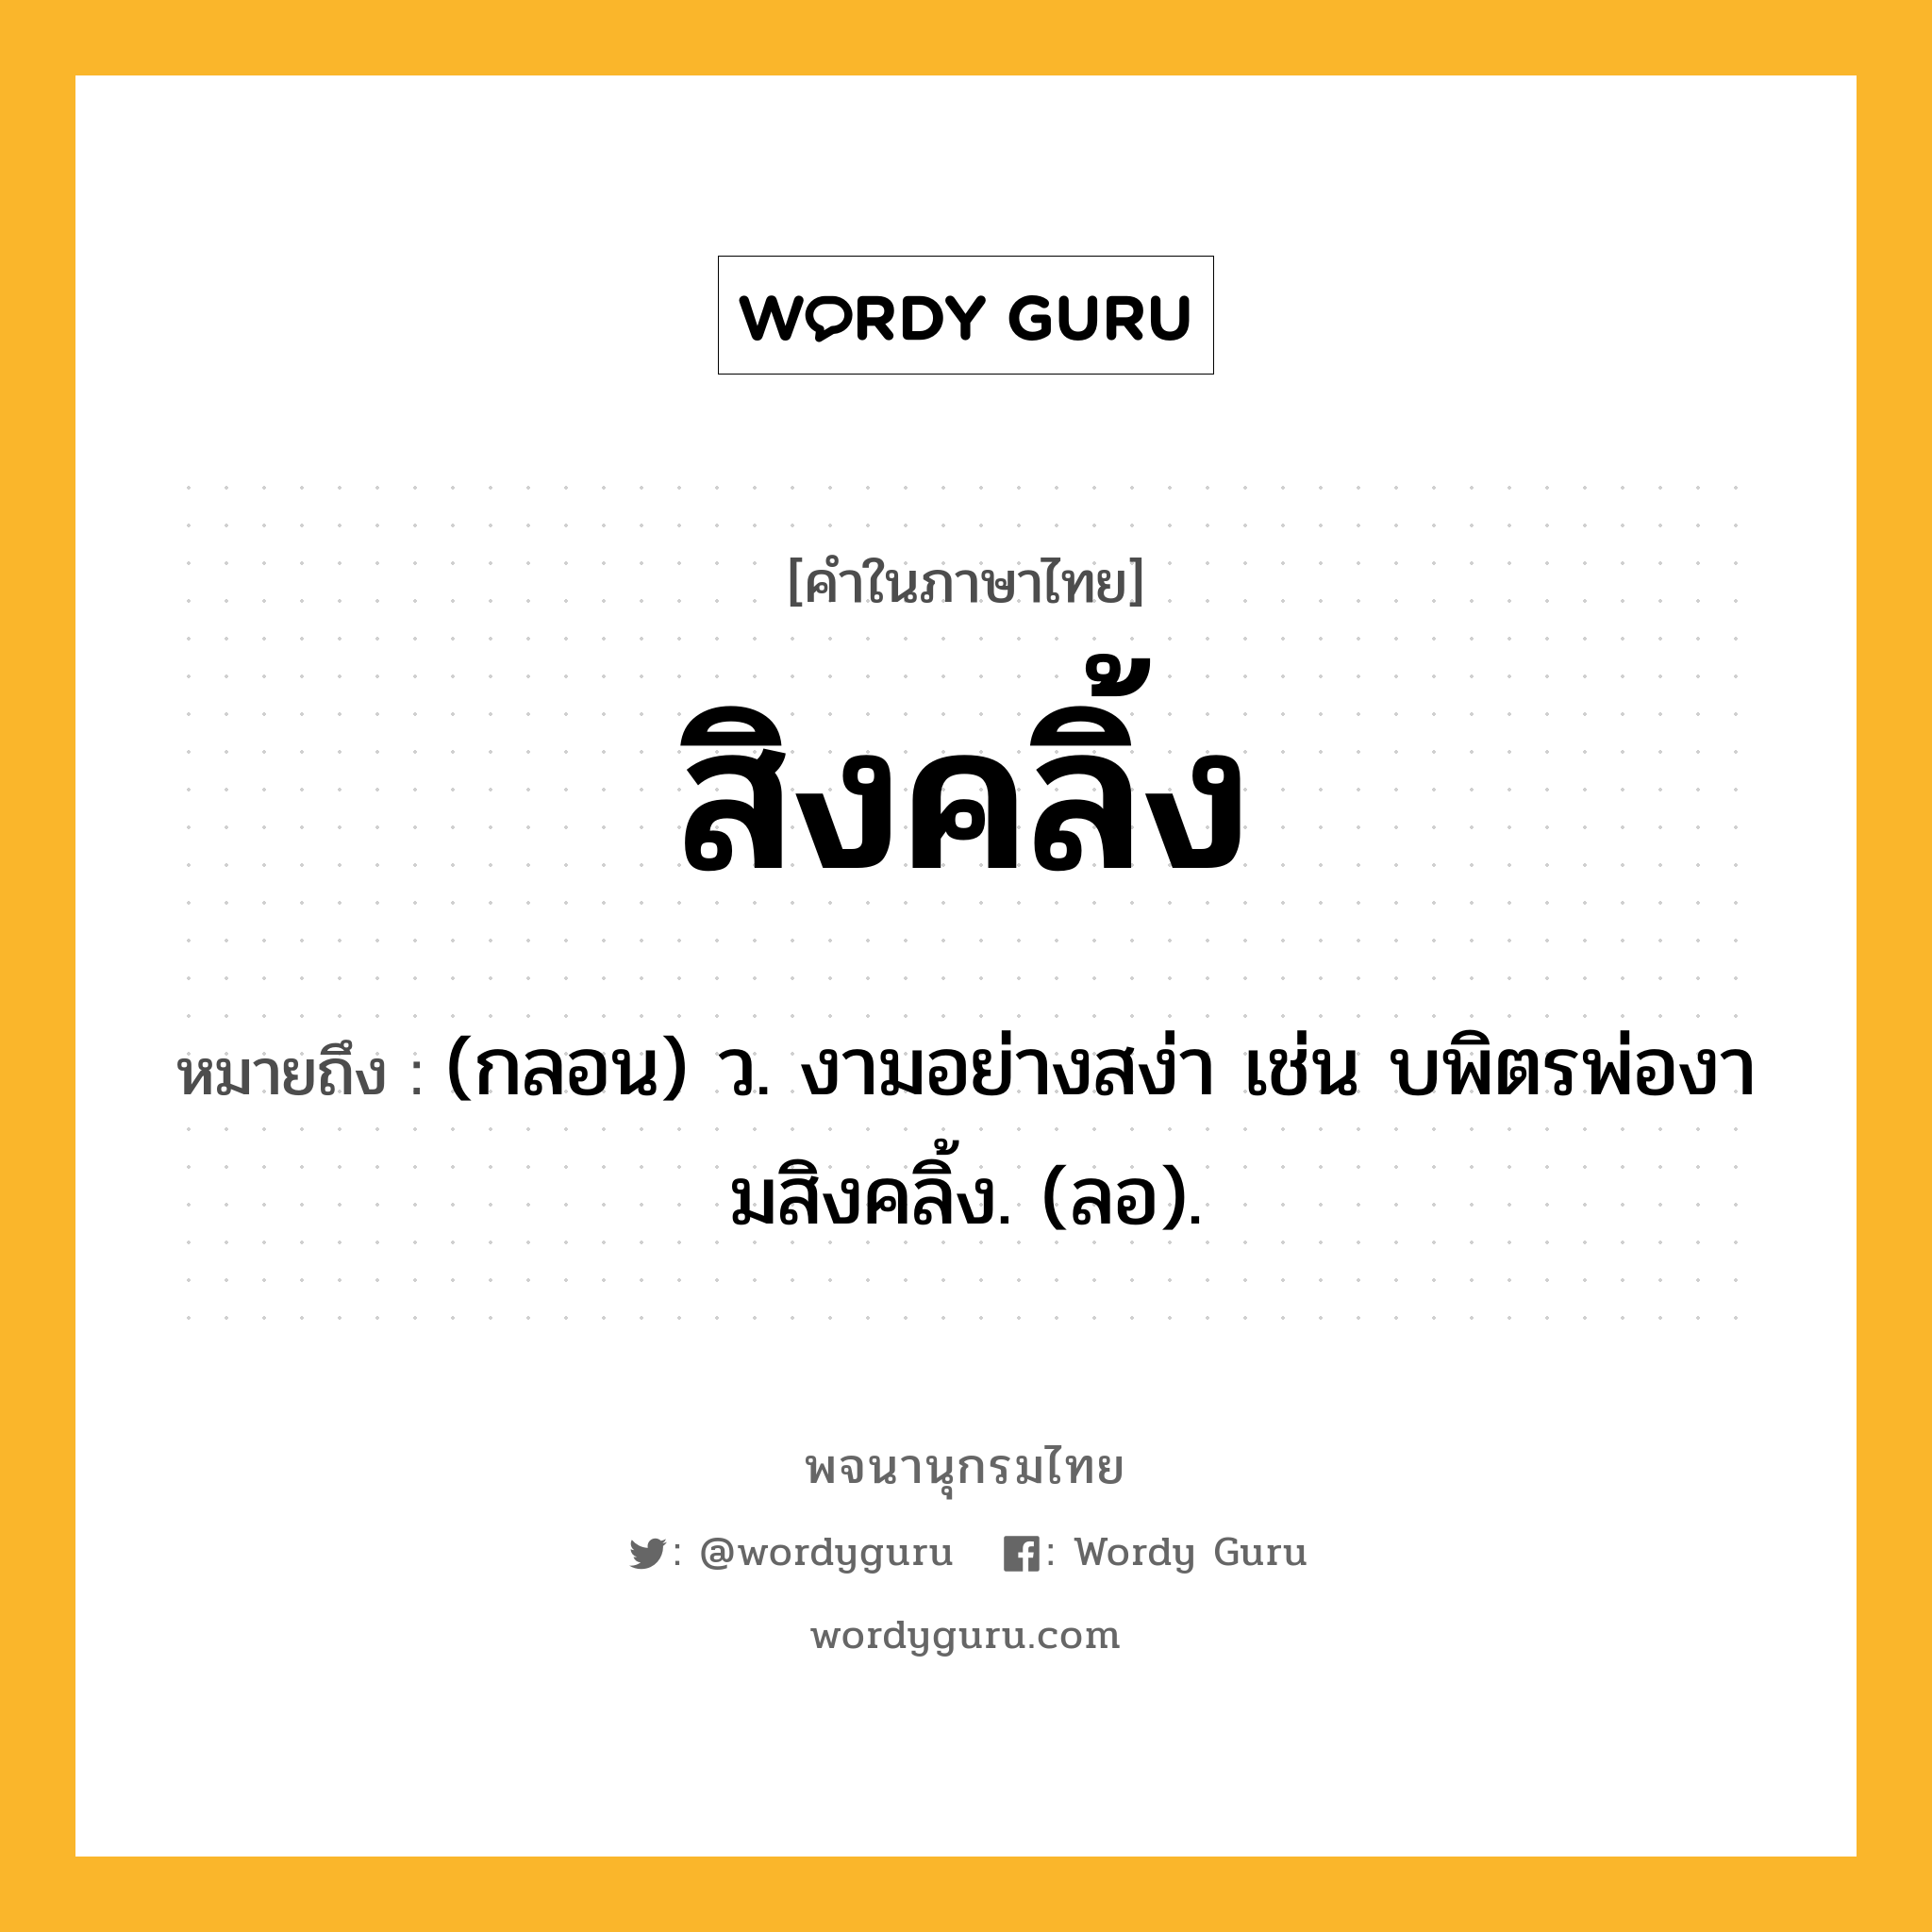 สิงคลิ้ง ความหมาย หมายถึงอะไร?, คำในภาษาไทย สิงคลิ้ง หมายถึง (กลอน) ว. งามอย่างสง่า เช่น บพิตรพ่องามสิงคลิ้ง. (ลอ).